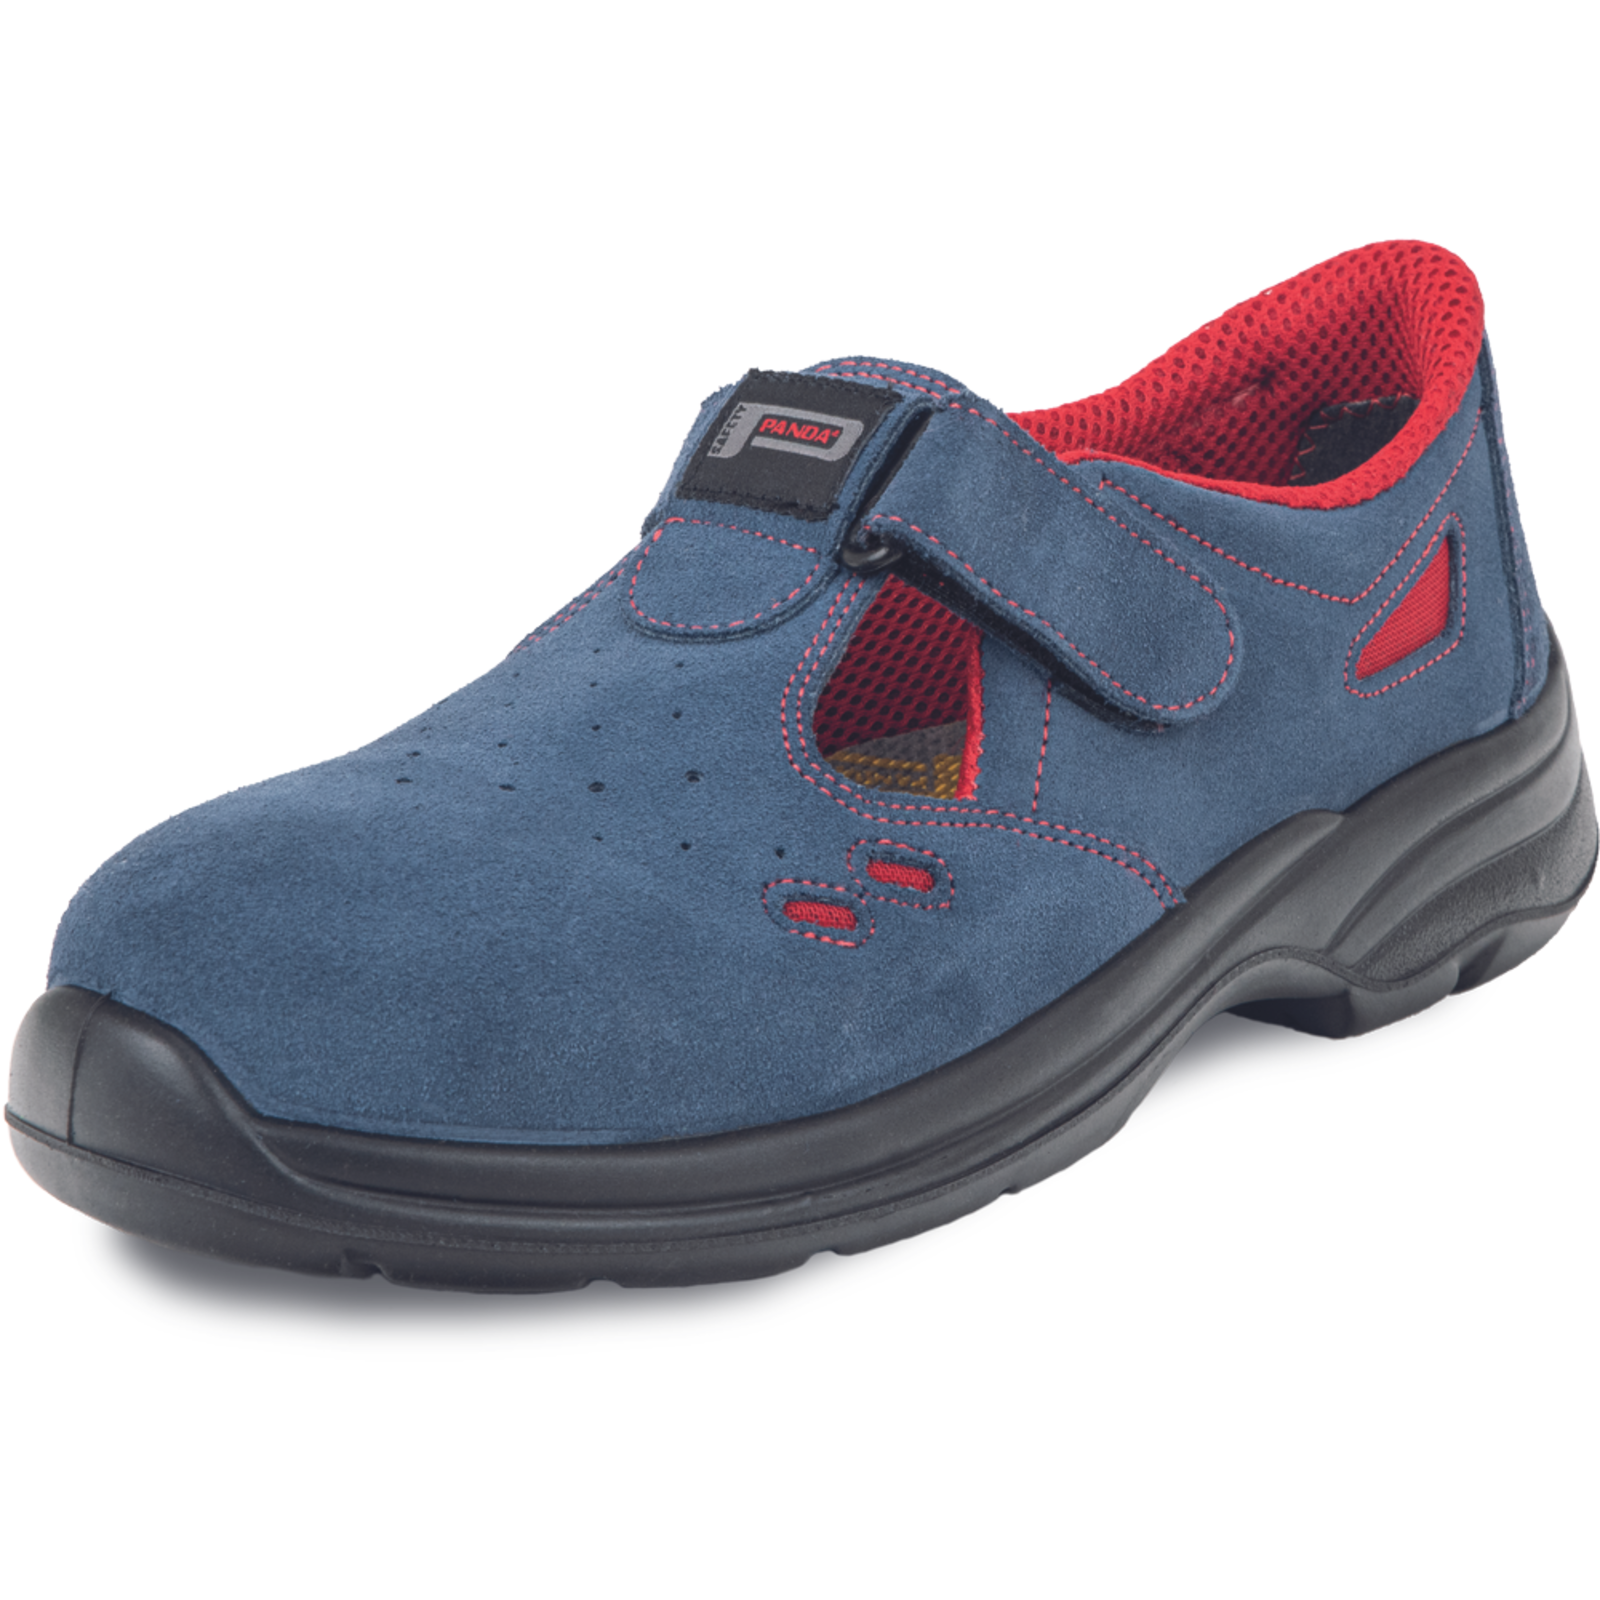 Pracovné bezpečnostné sandále Panda Ringo MF S1 SRC - veľkosť: 39, farba: modrá/červená